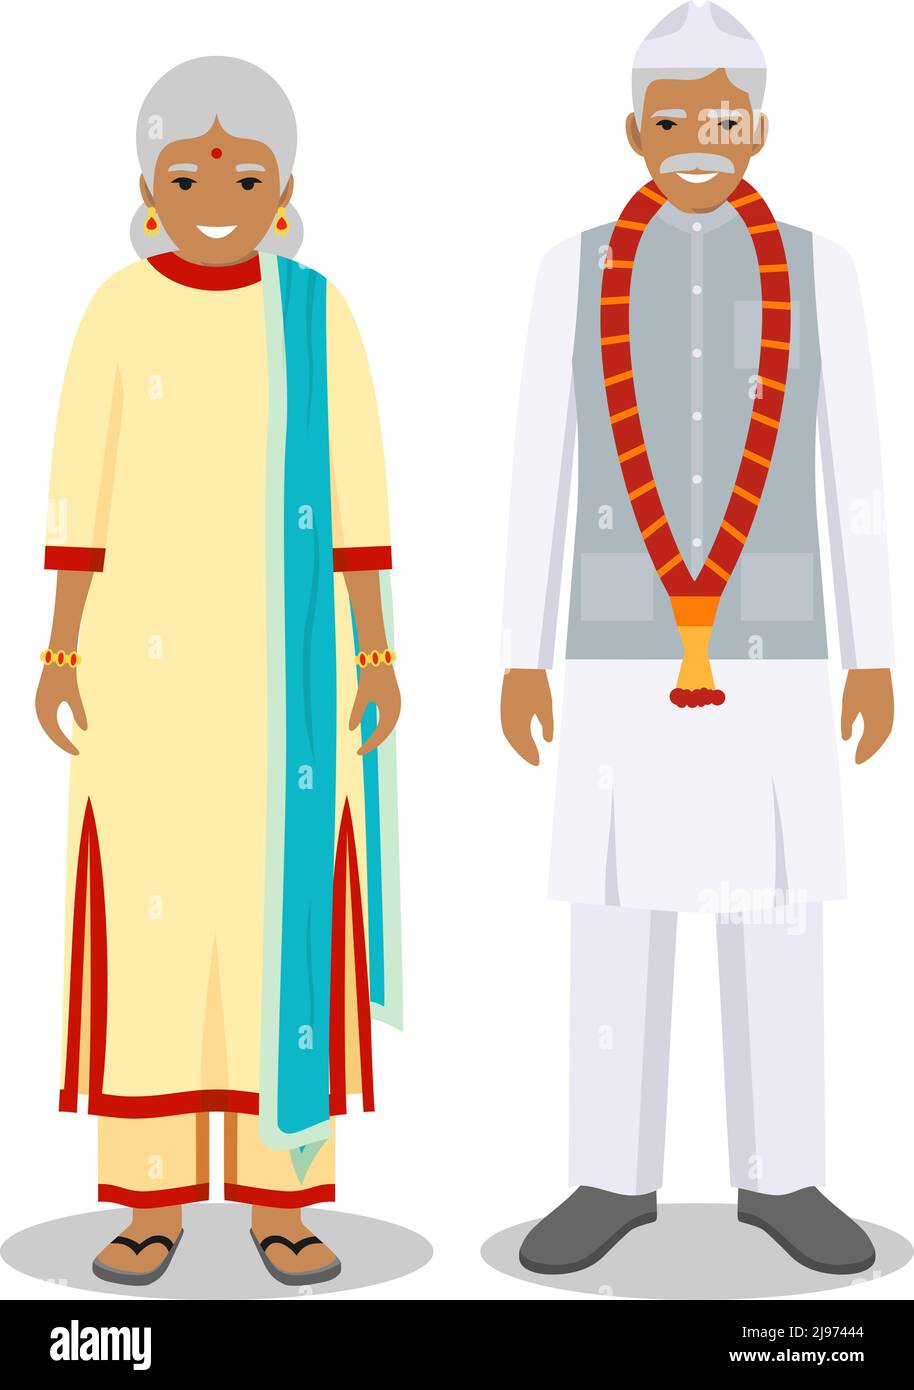 Detaillierte Darstellung von stehenden alten indianern in der traditionellen nationalen indischen Kleidung isoliert auf weißem Hintergrund in flachem Stil. Senior ind Stock Vektor